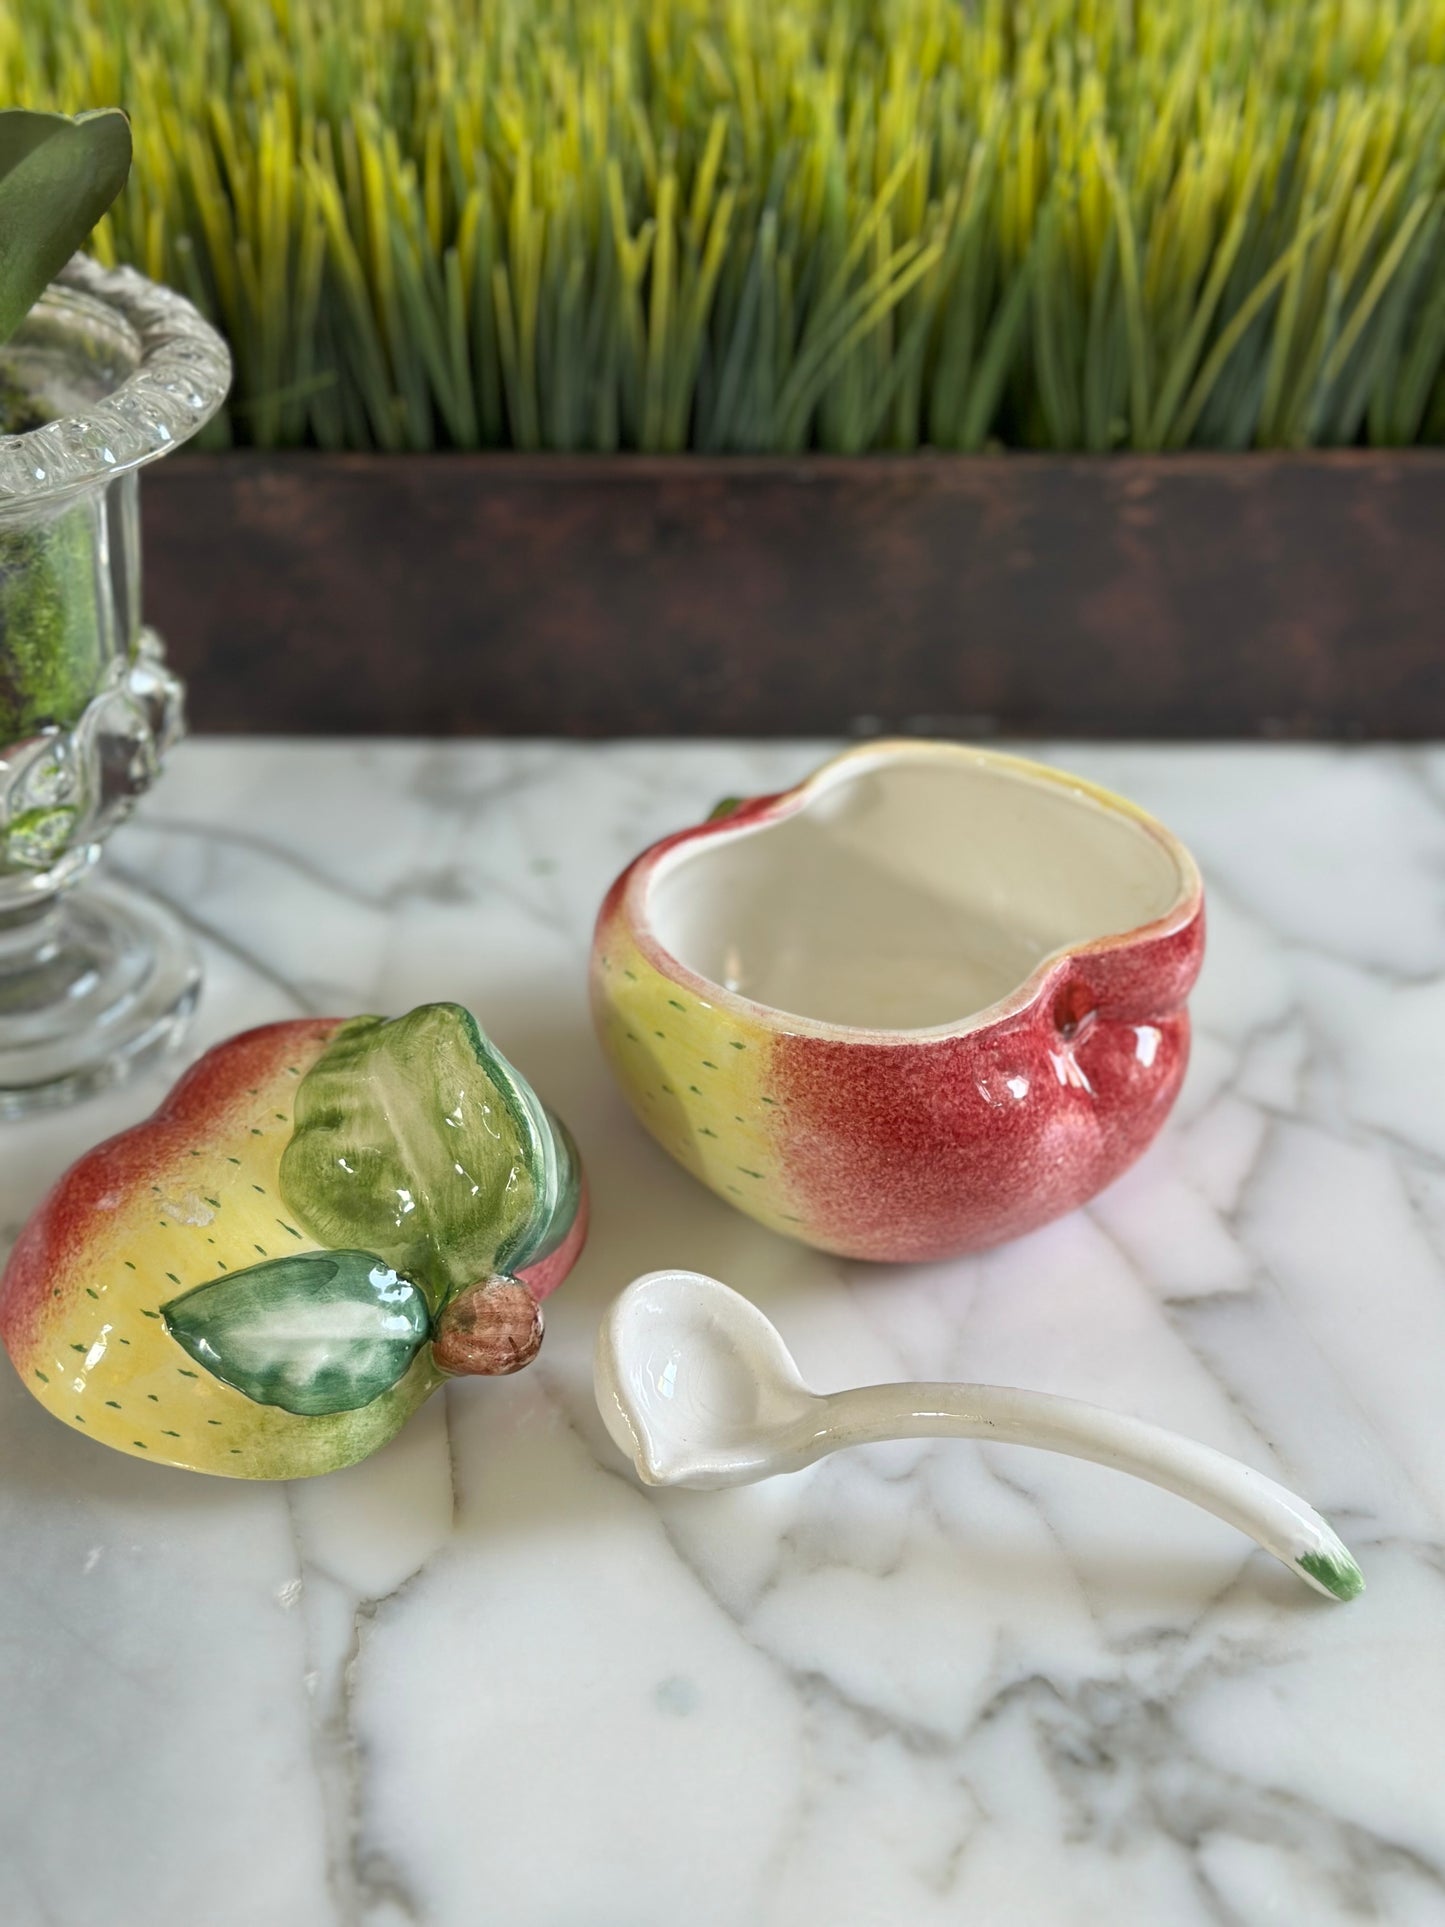 Vintage Made in Italy Ceramic Apple Jam Jar, 5" Wide - Pristine!